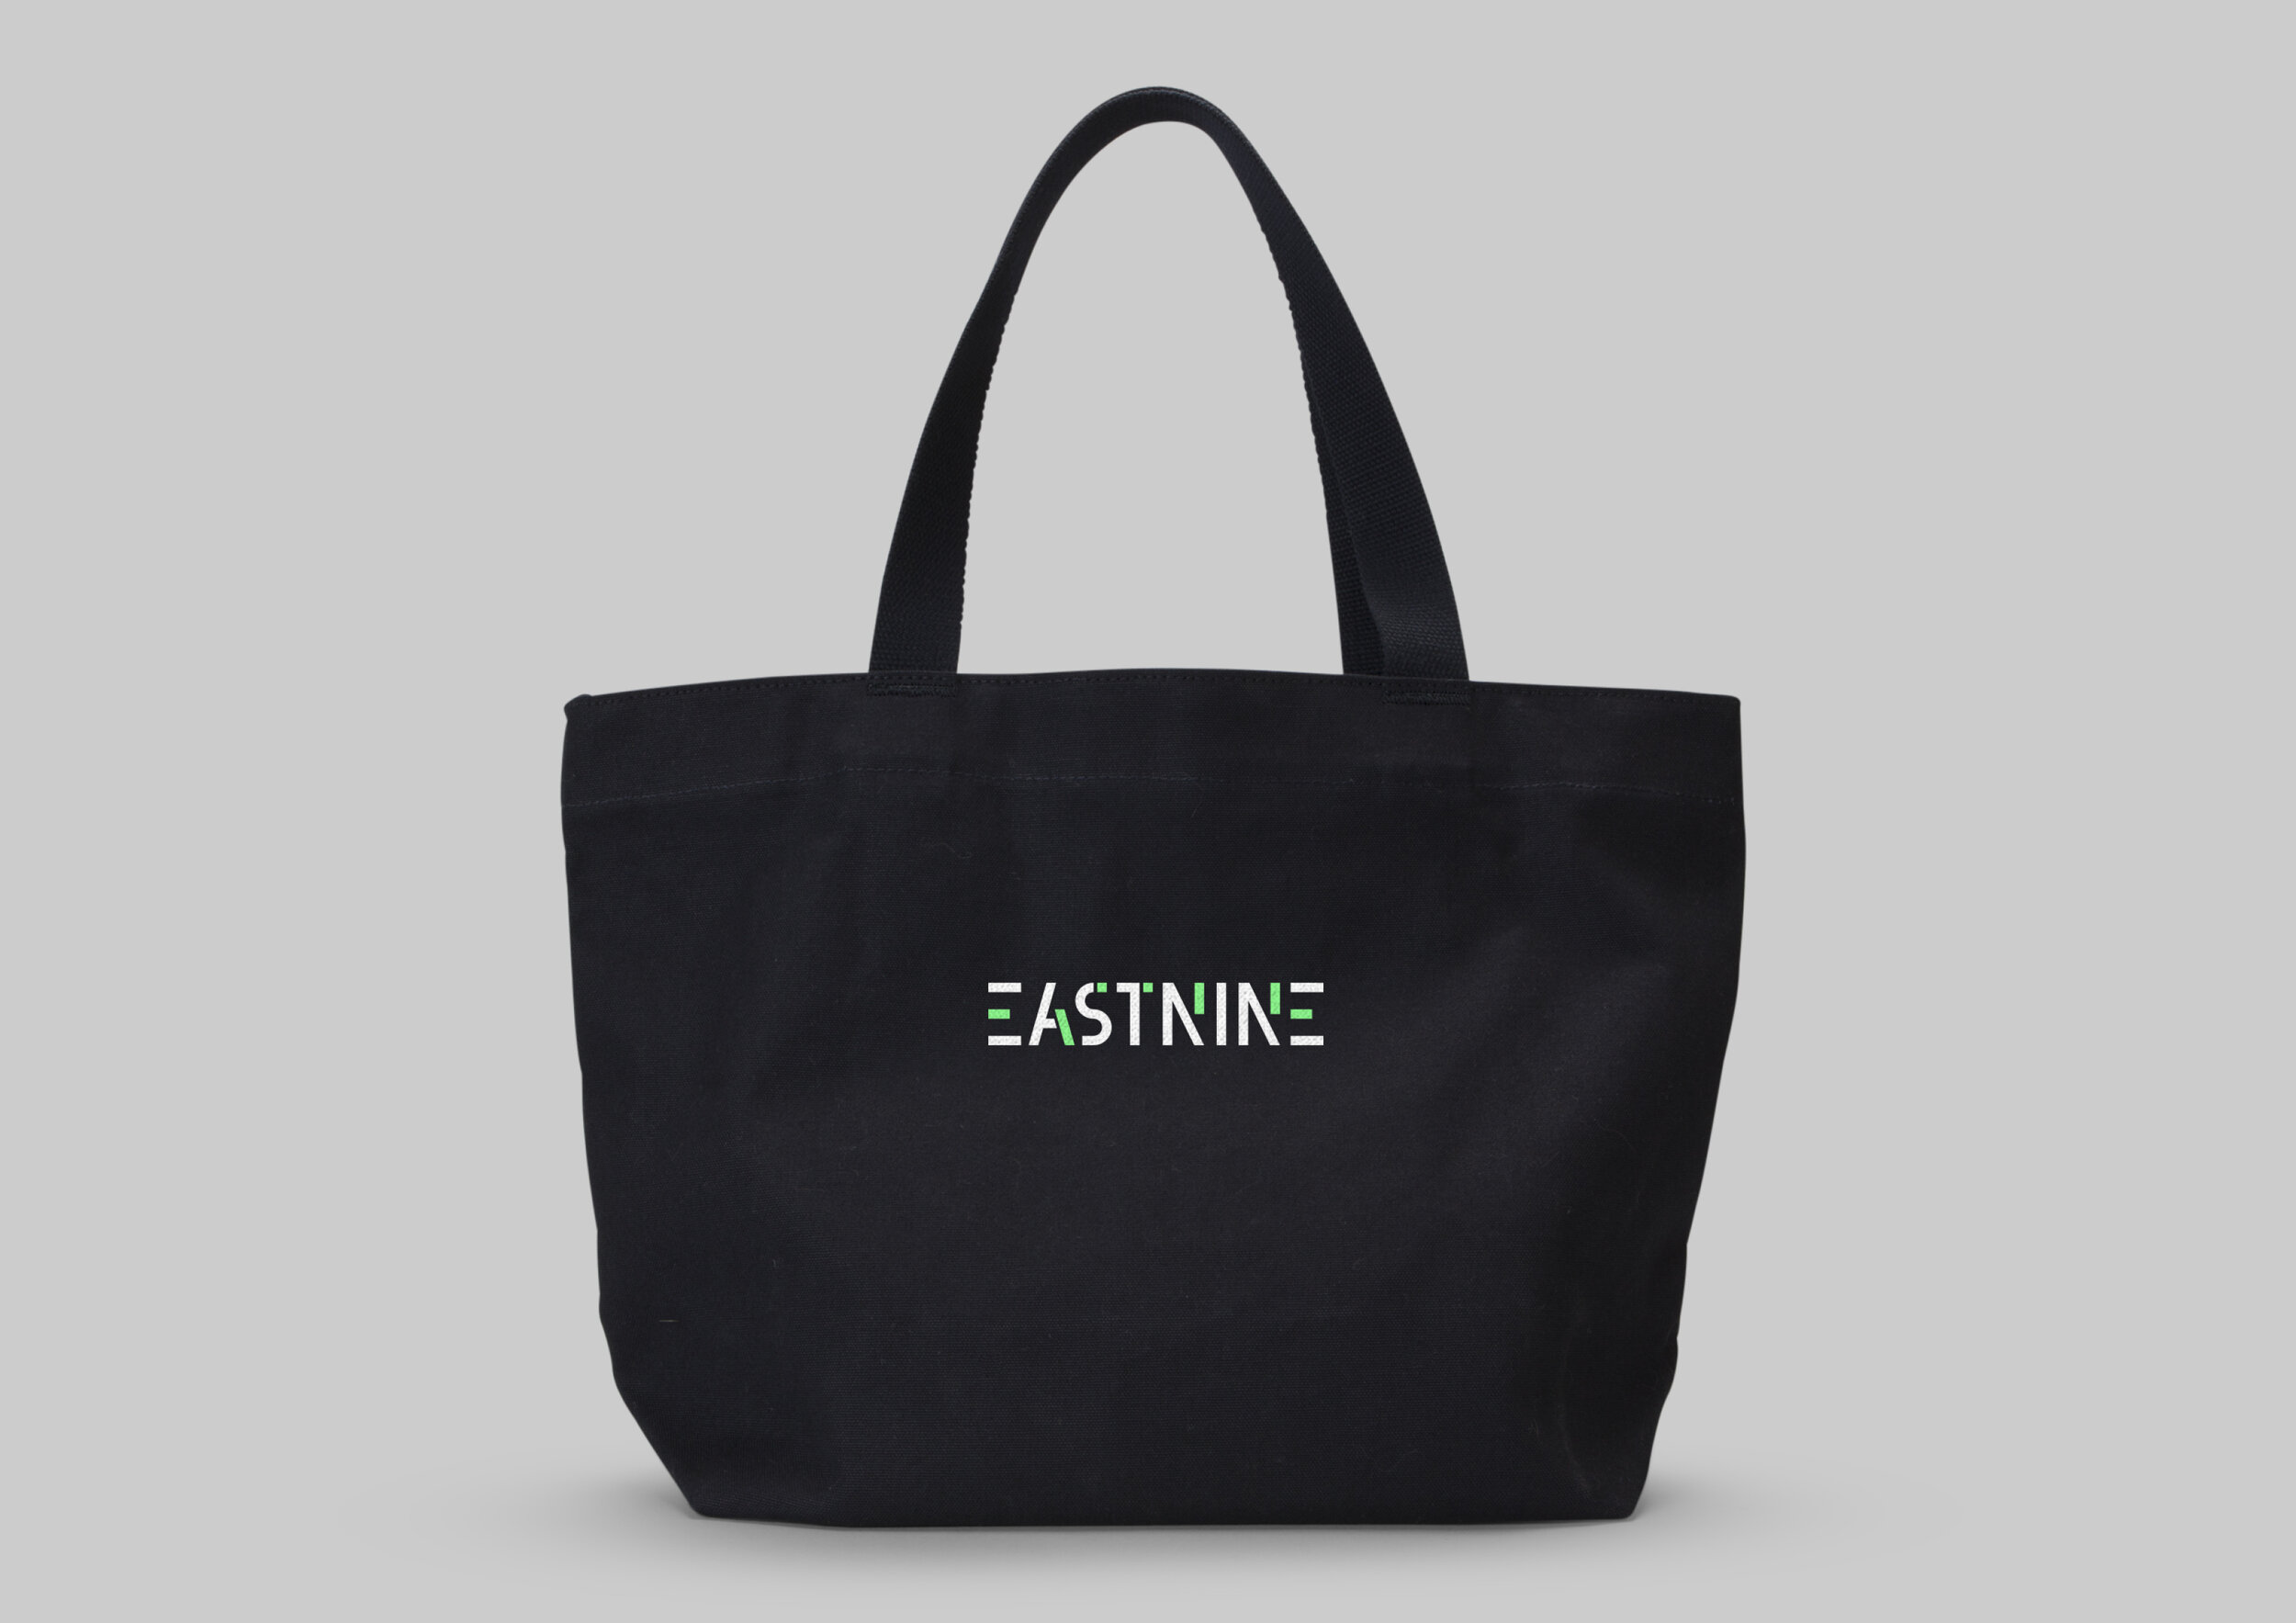 Eastnine-Brand-Visuals-v013.jpg